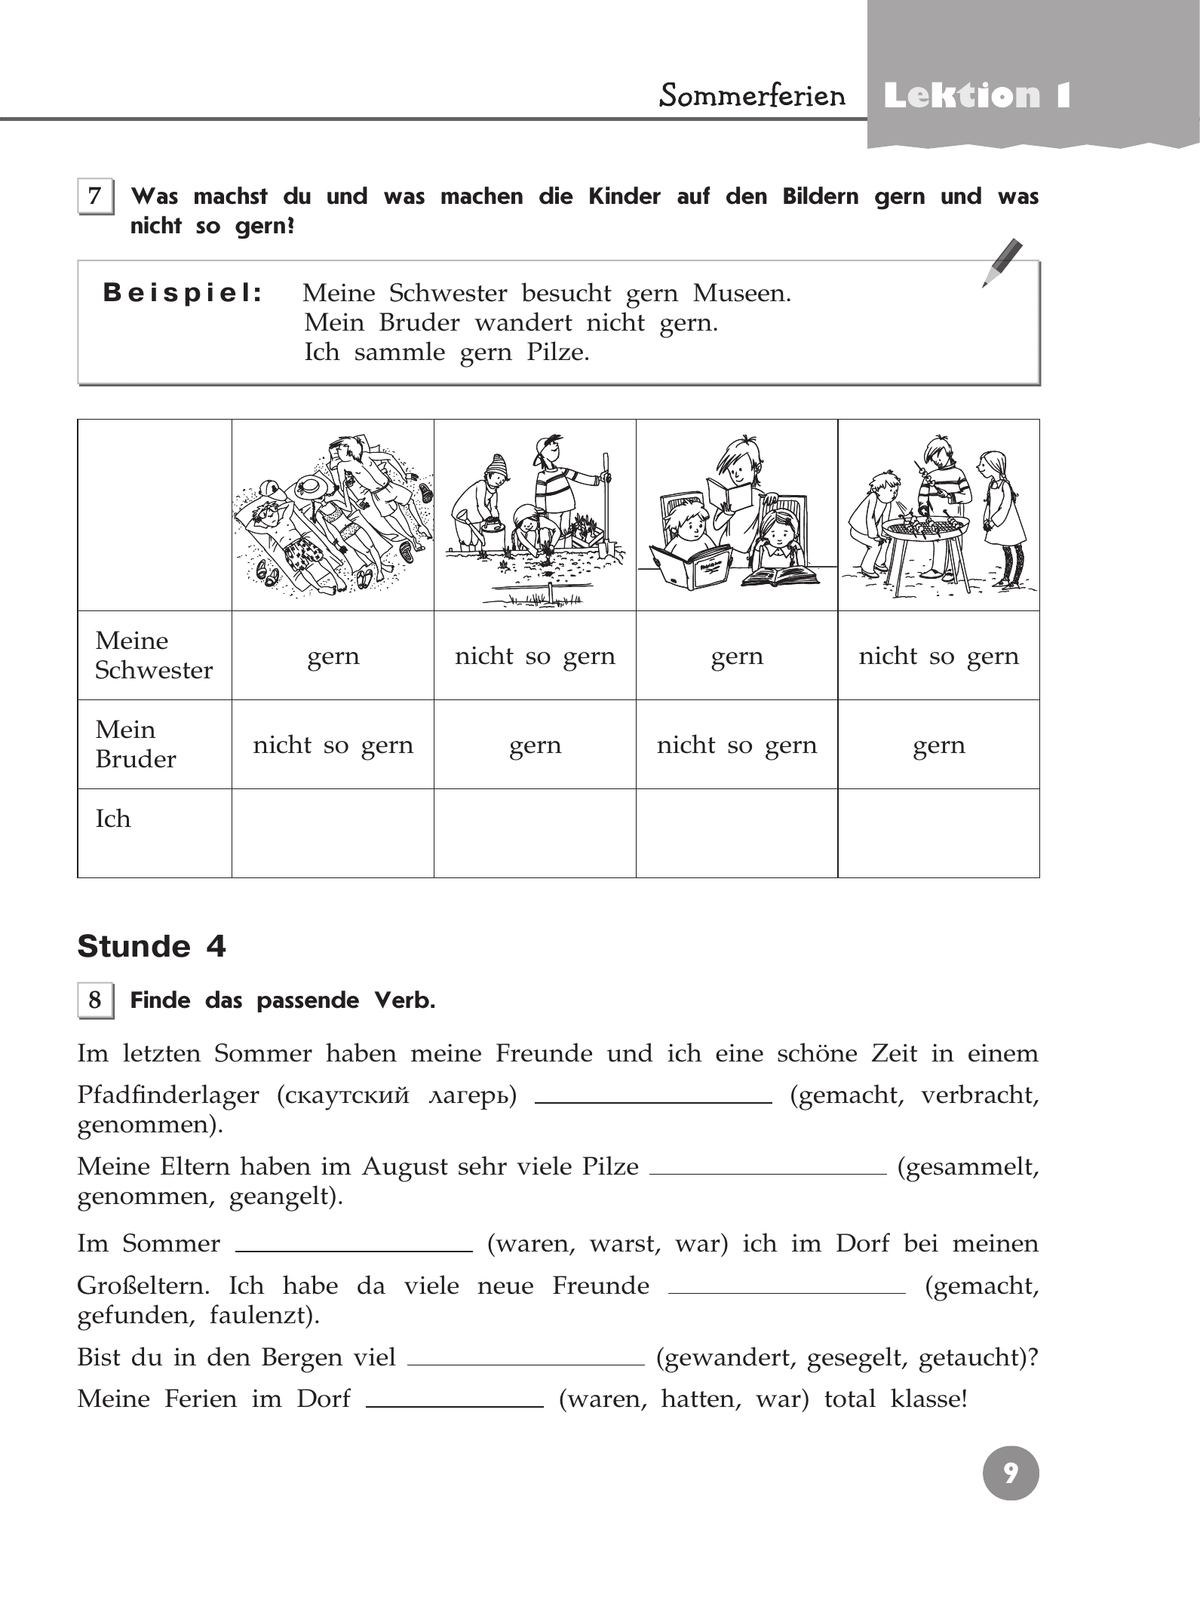 Немецкий язык. Рабочая тетрадь. 7 класс 2